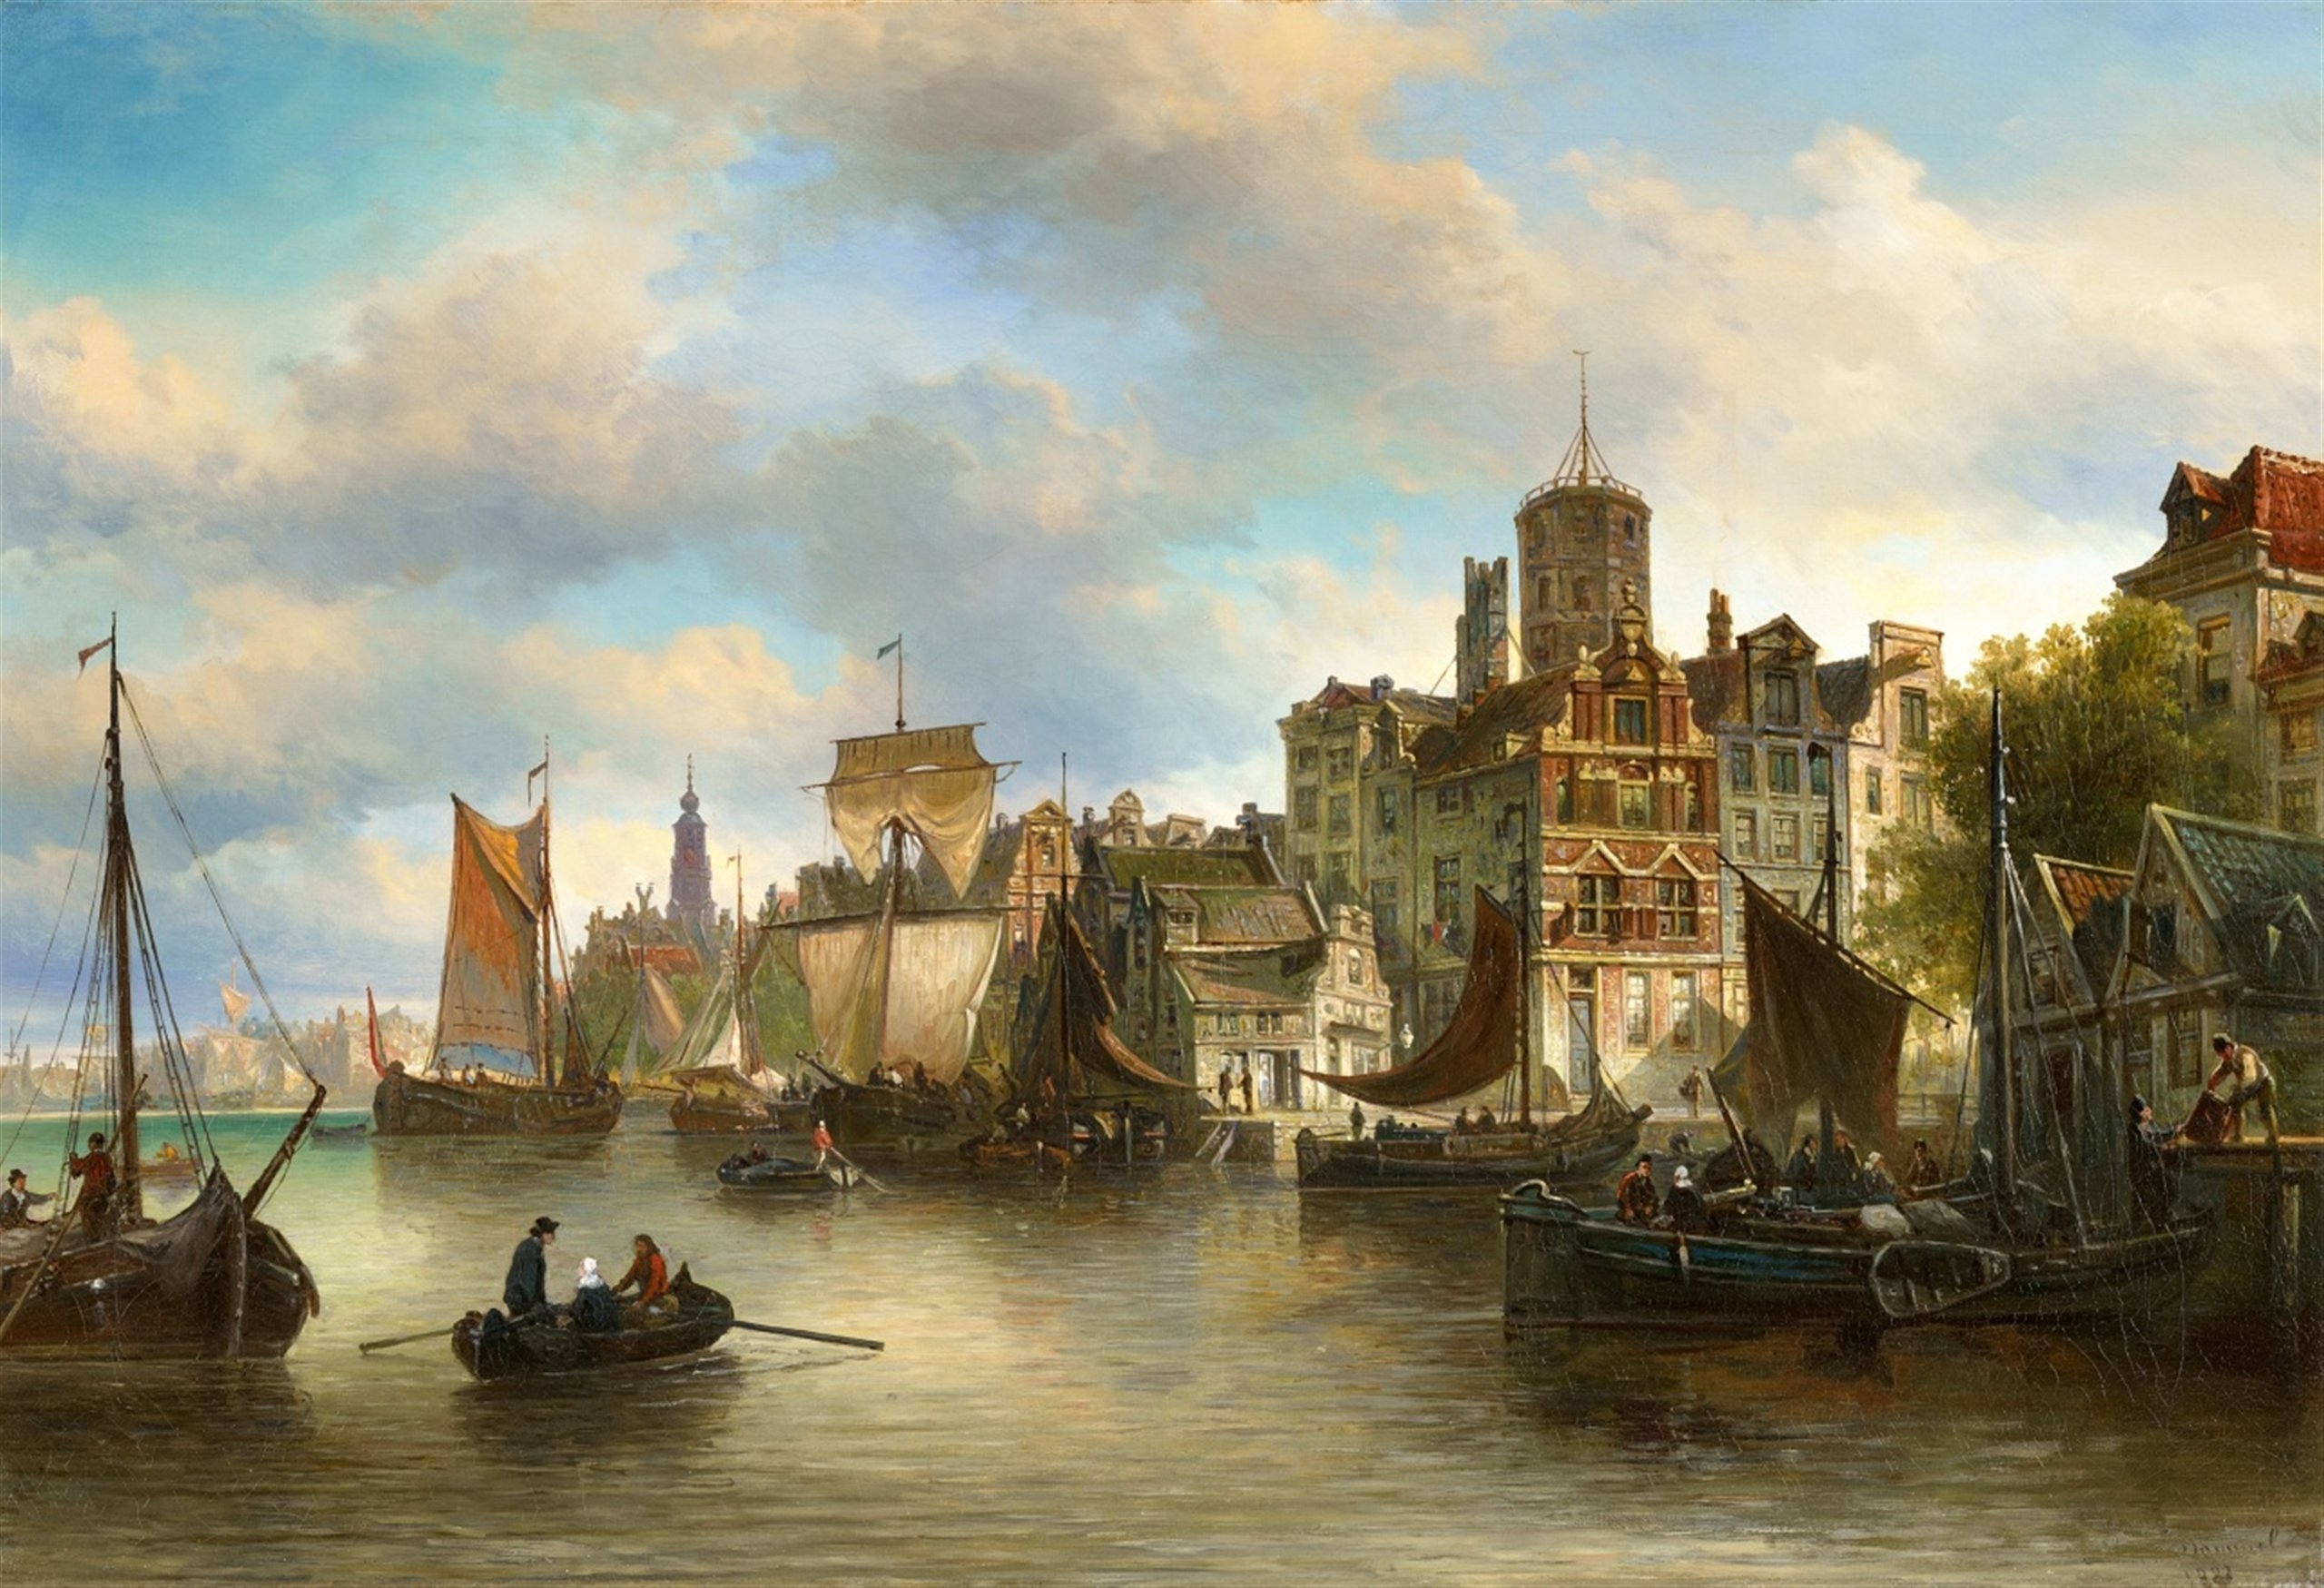 View of Amsterdam by Elias Pieter van Bommel, 1883